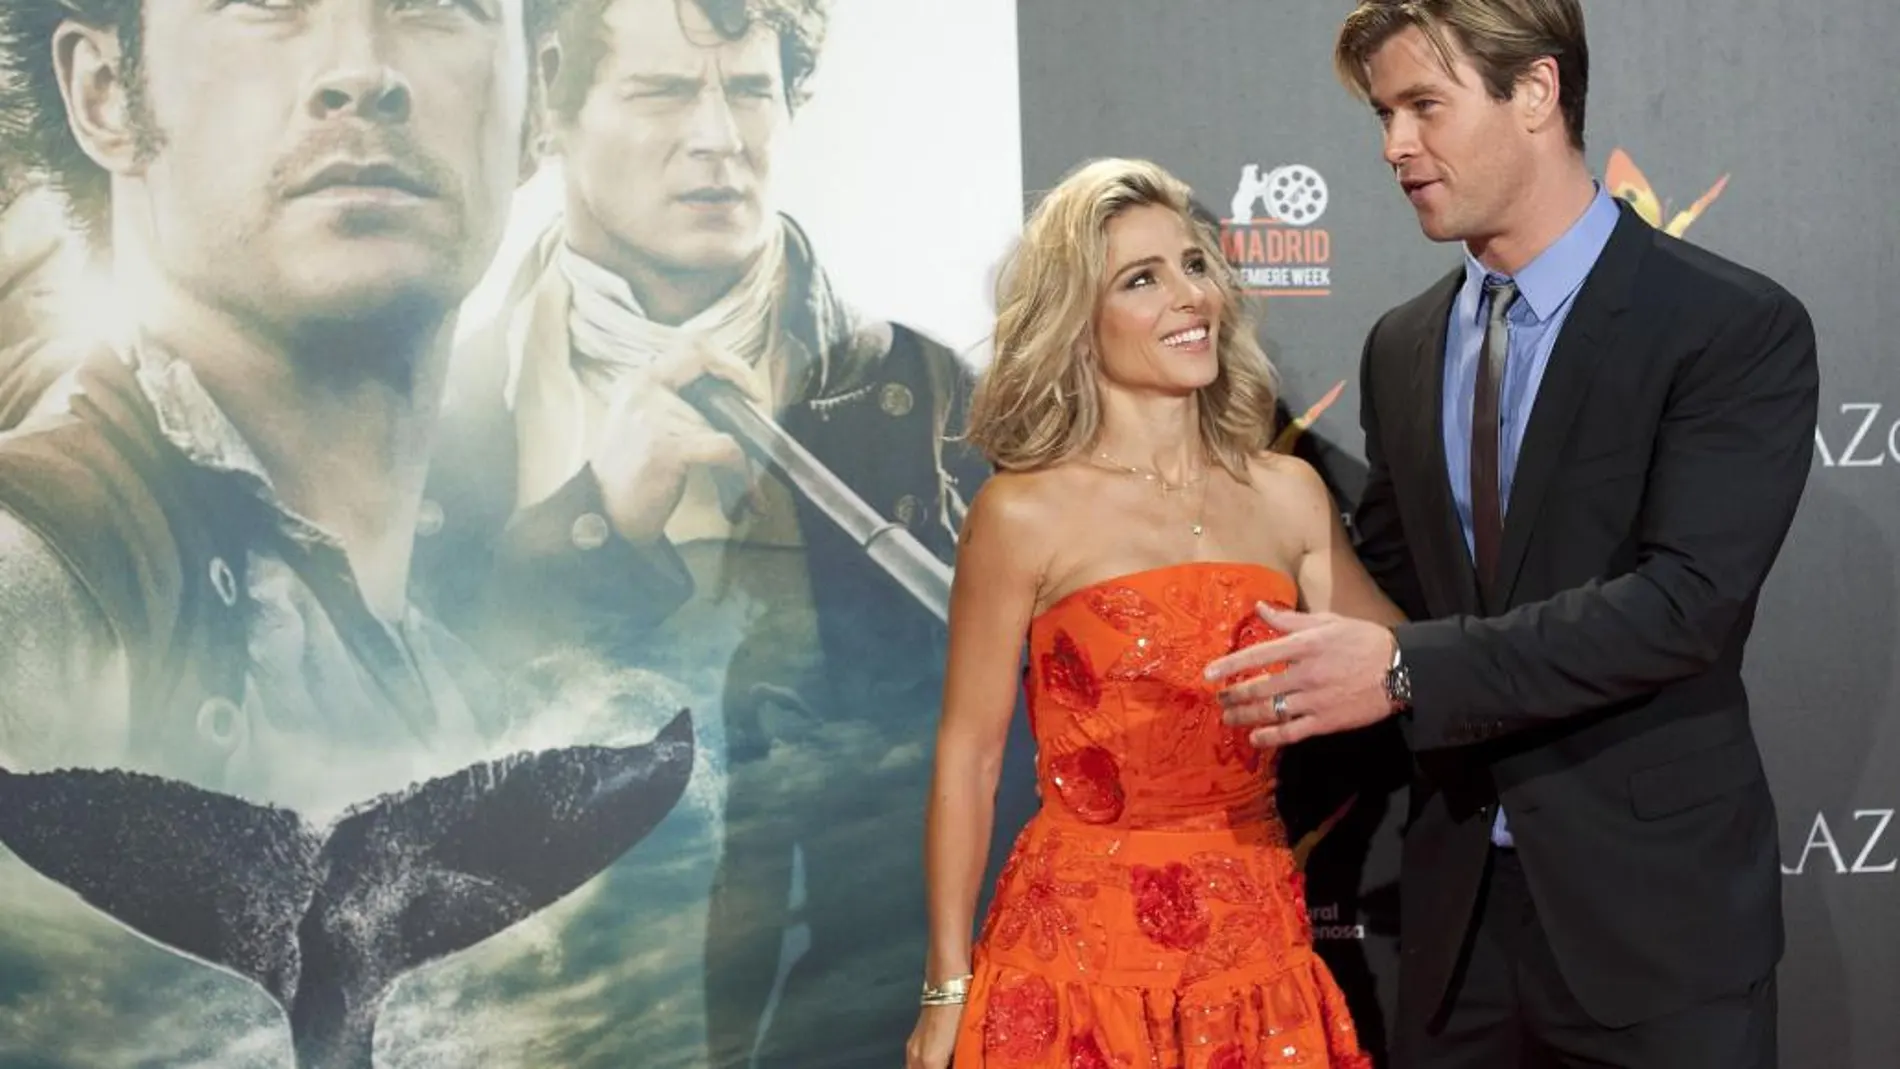 Chris Hemsworth, acompañado por su esposa, Elsa Pataky, a su llegada a la premiere